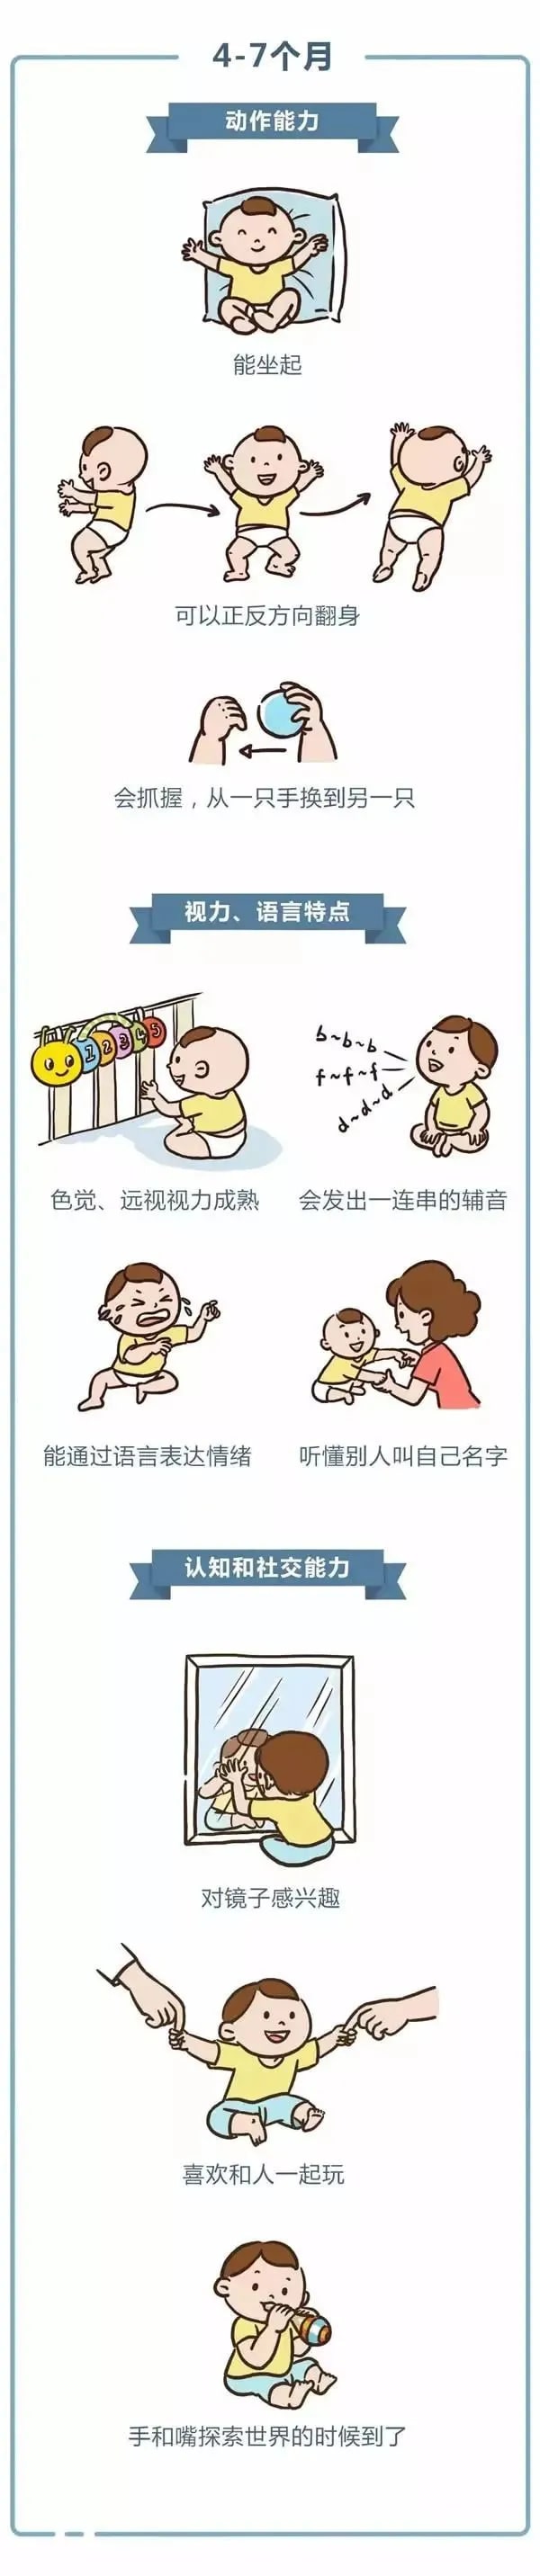 0-3岁婴幼儿发育指标对照表